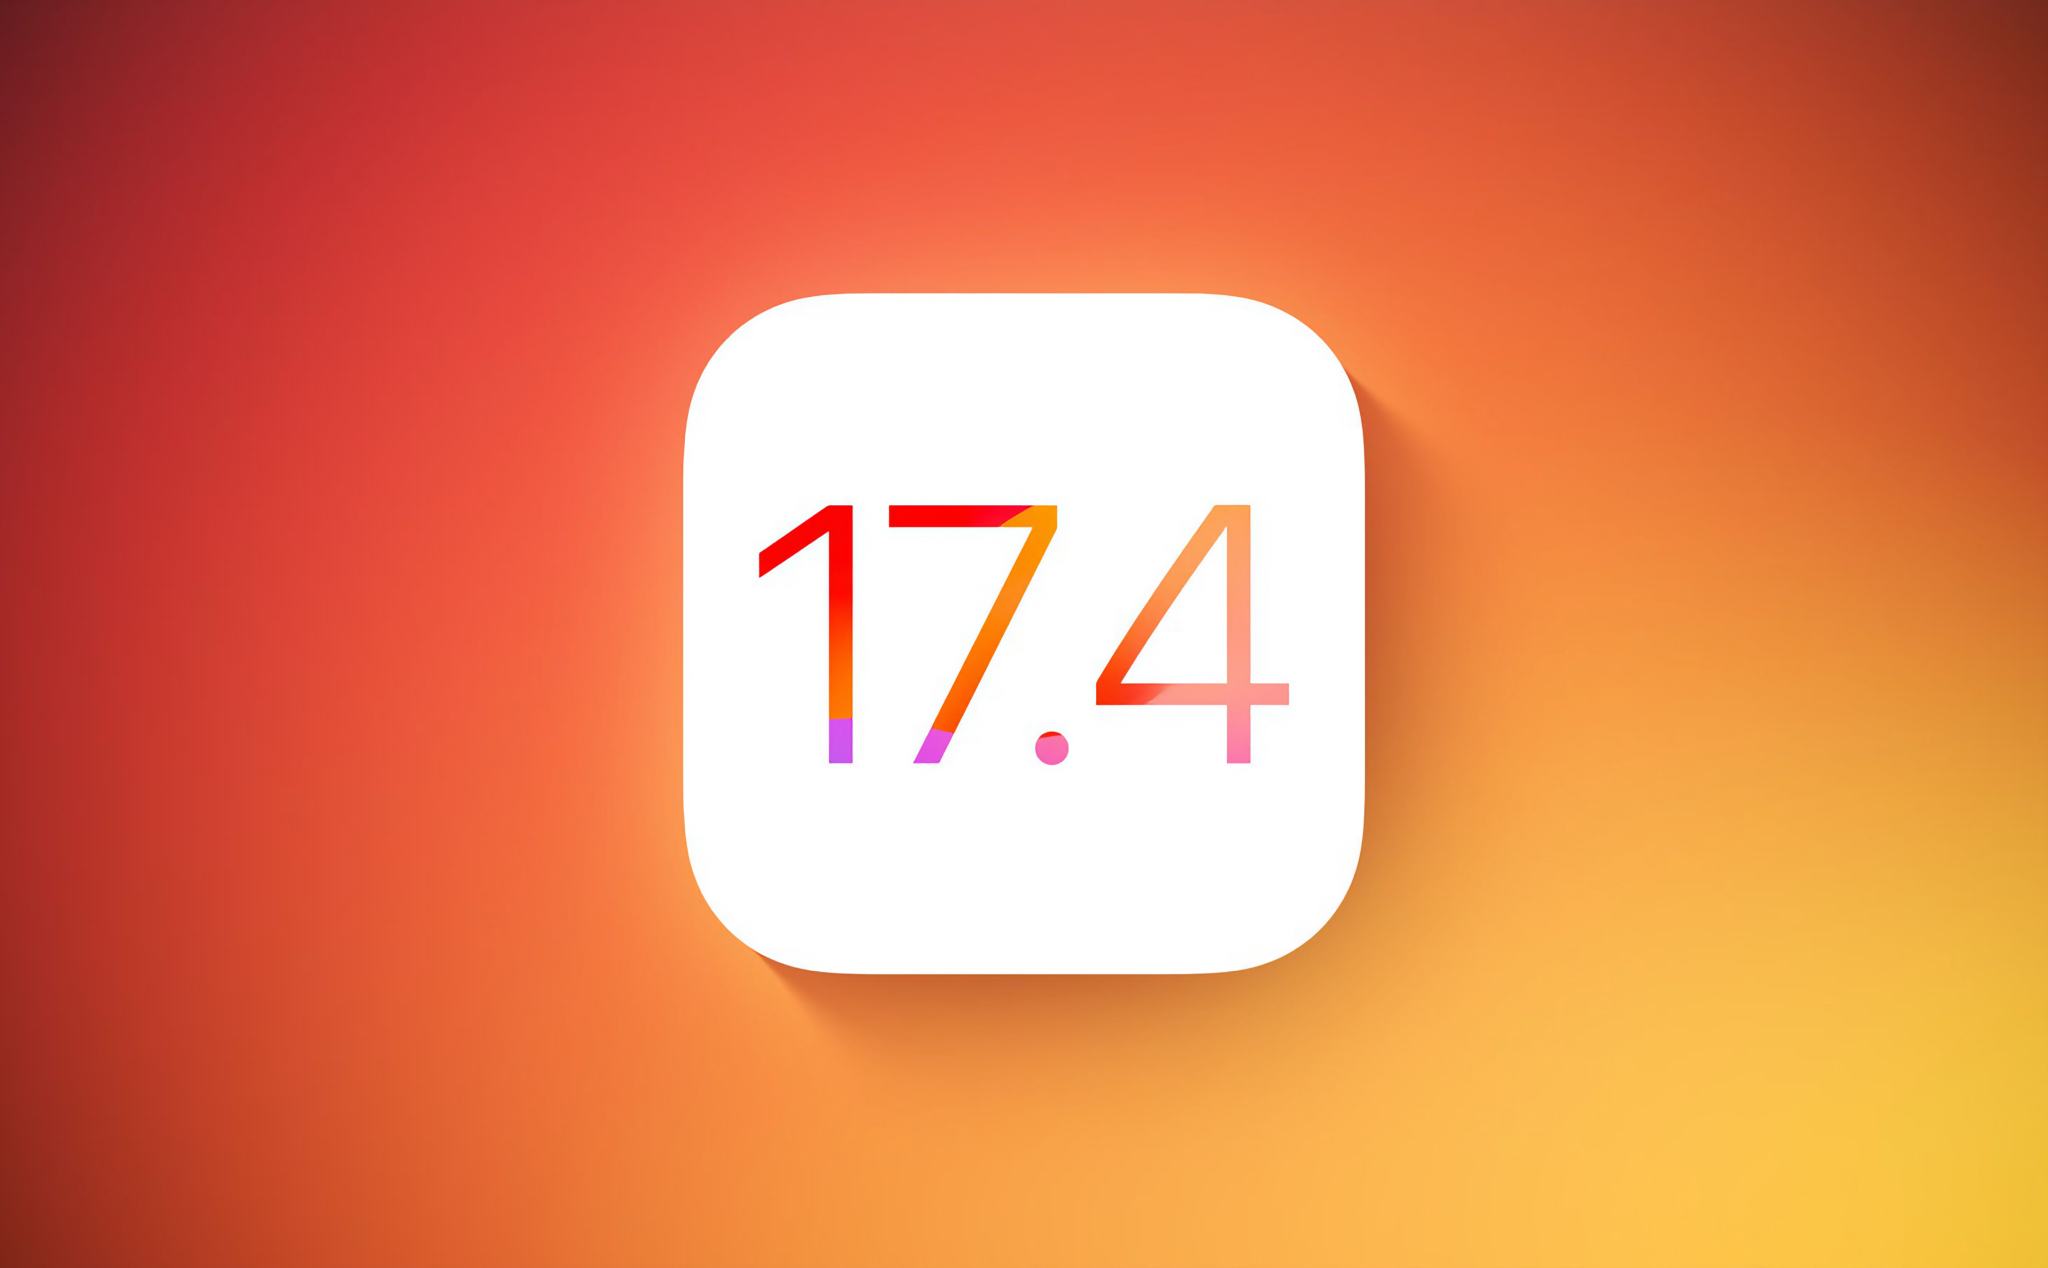 Apple phát hành iOS 17.4 RC: nếu gặp lỗi với iOS 17.3.1 thì anh em nên lên nha